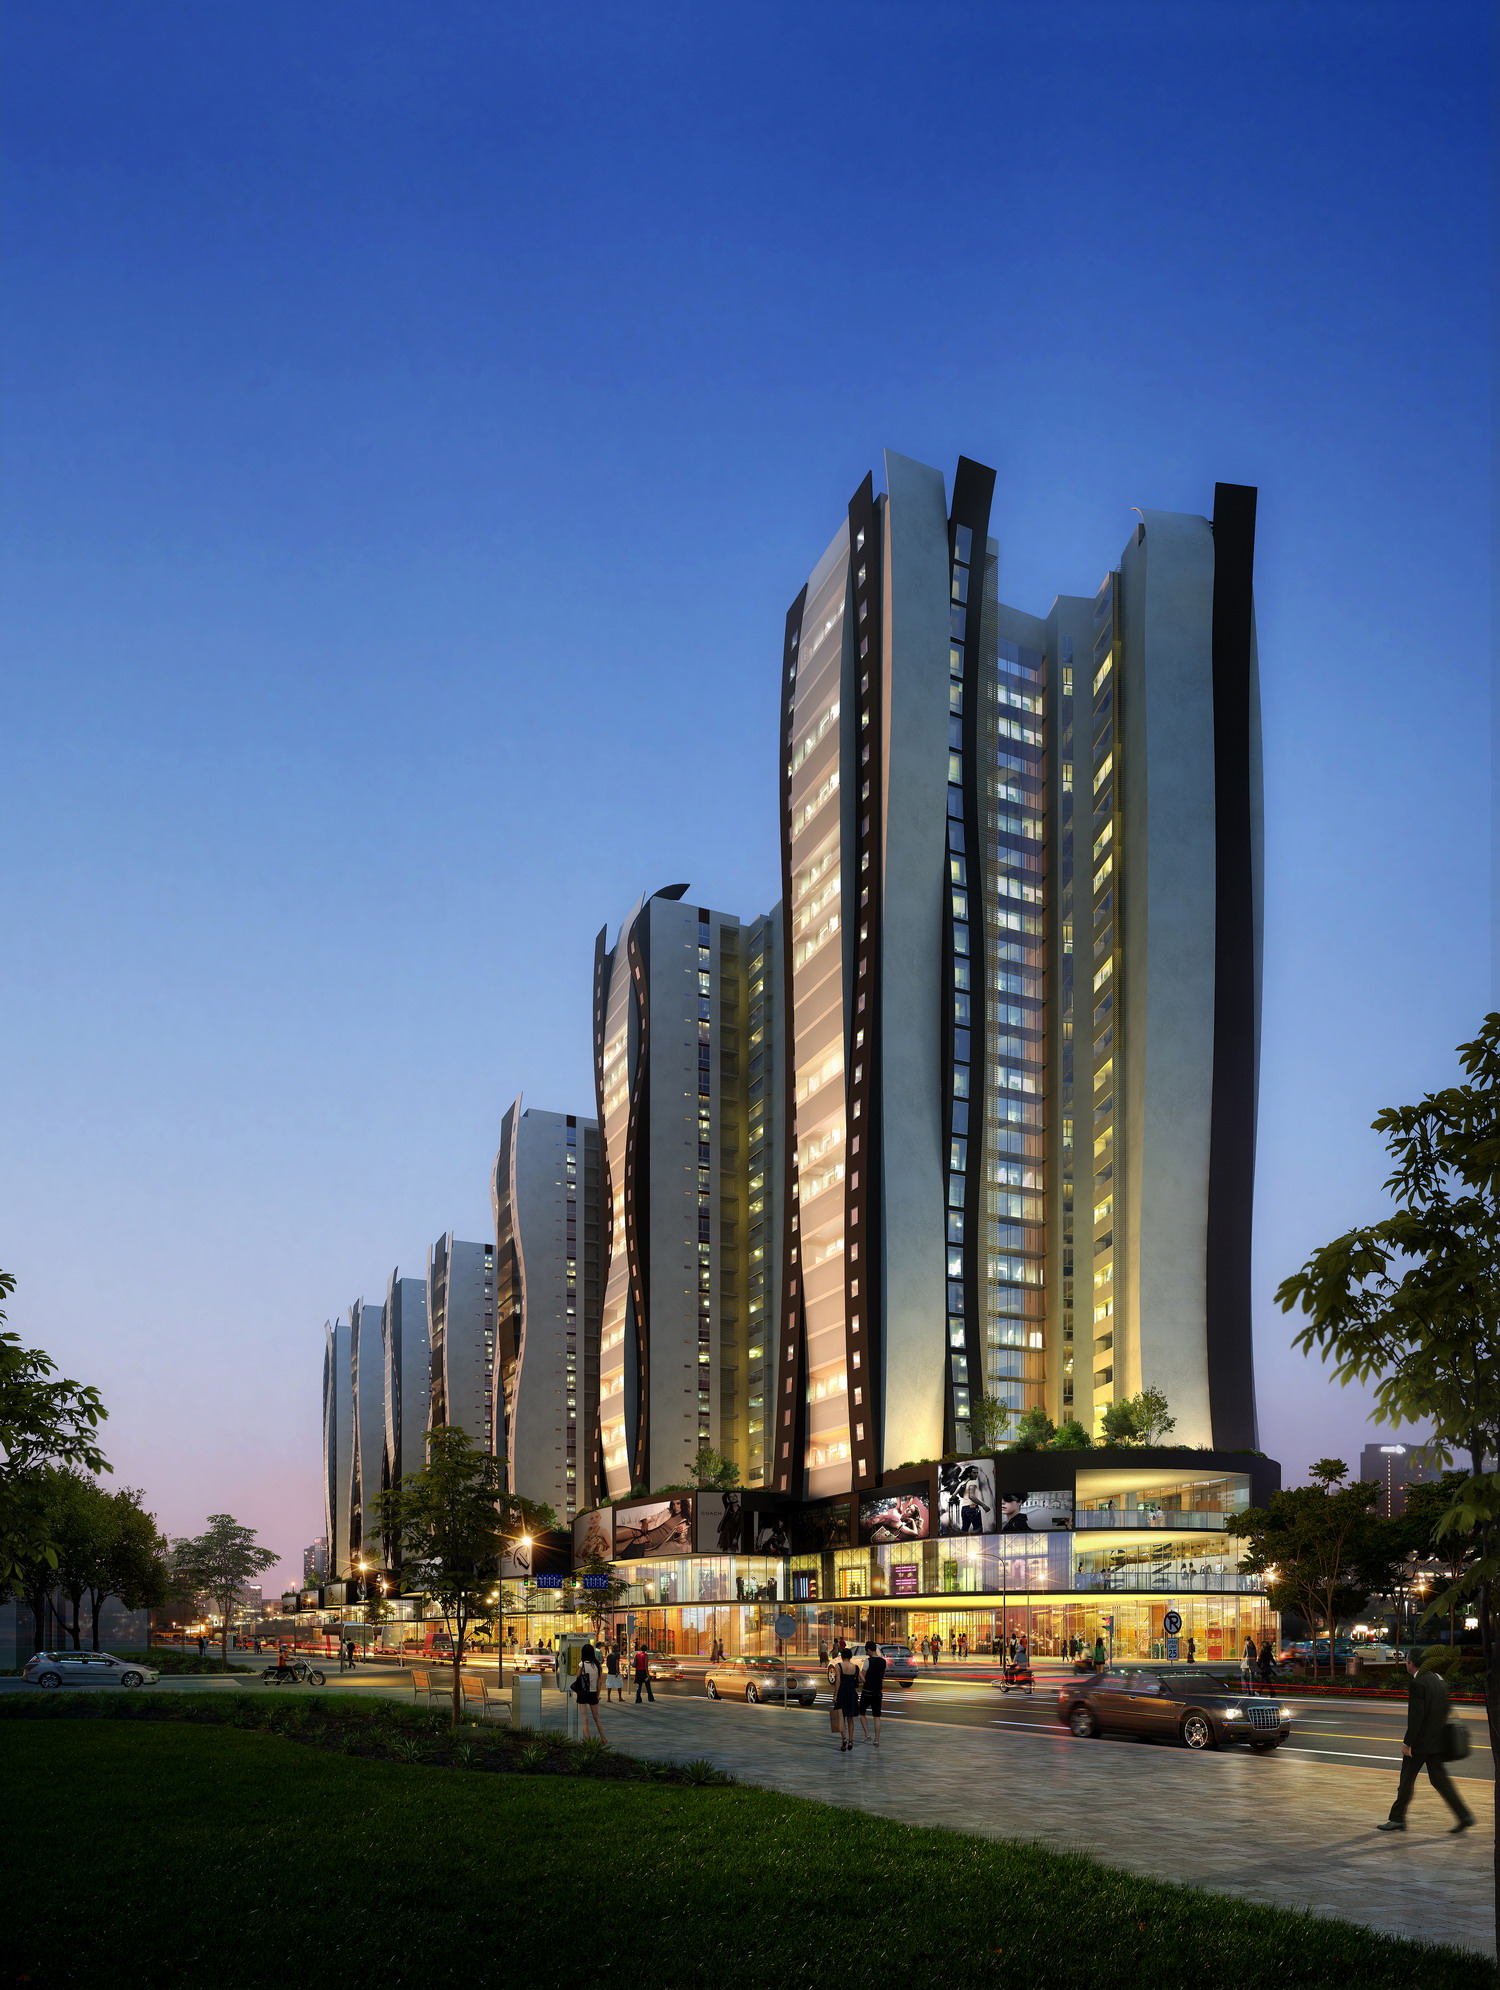 گالری عکس 3 پروژه بزرگ و چندمنظوره شهر جییوان چین  عکس برج مسکونی عکس شهرسازی عکس طراحی شهری عکس طراحی نما عکس معماری چین عکس هتل برج